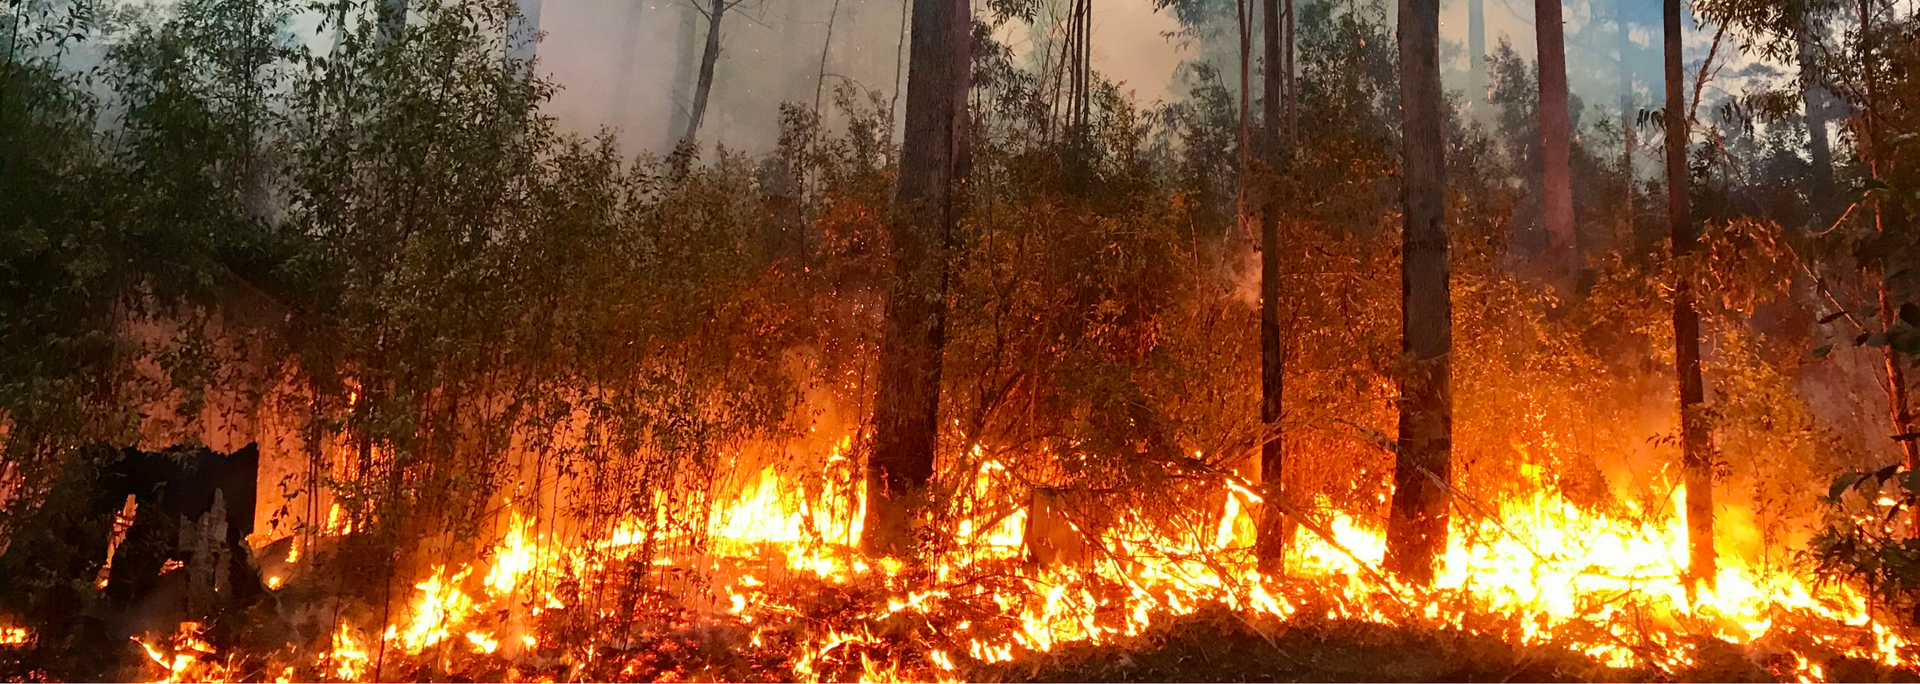 Picture of a bushfire.
